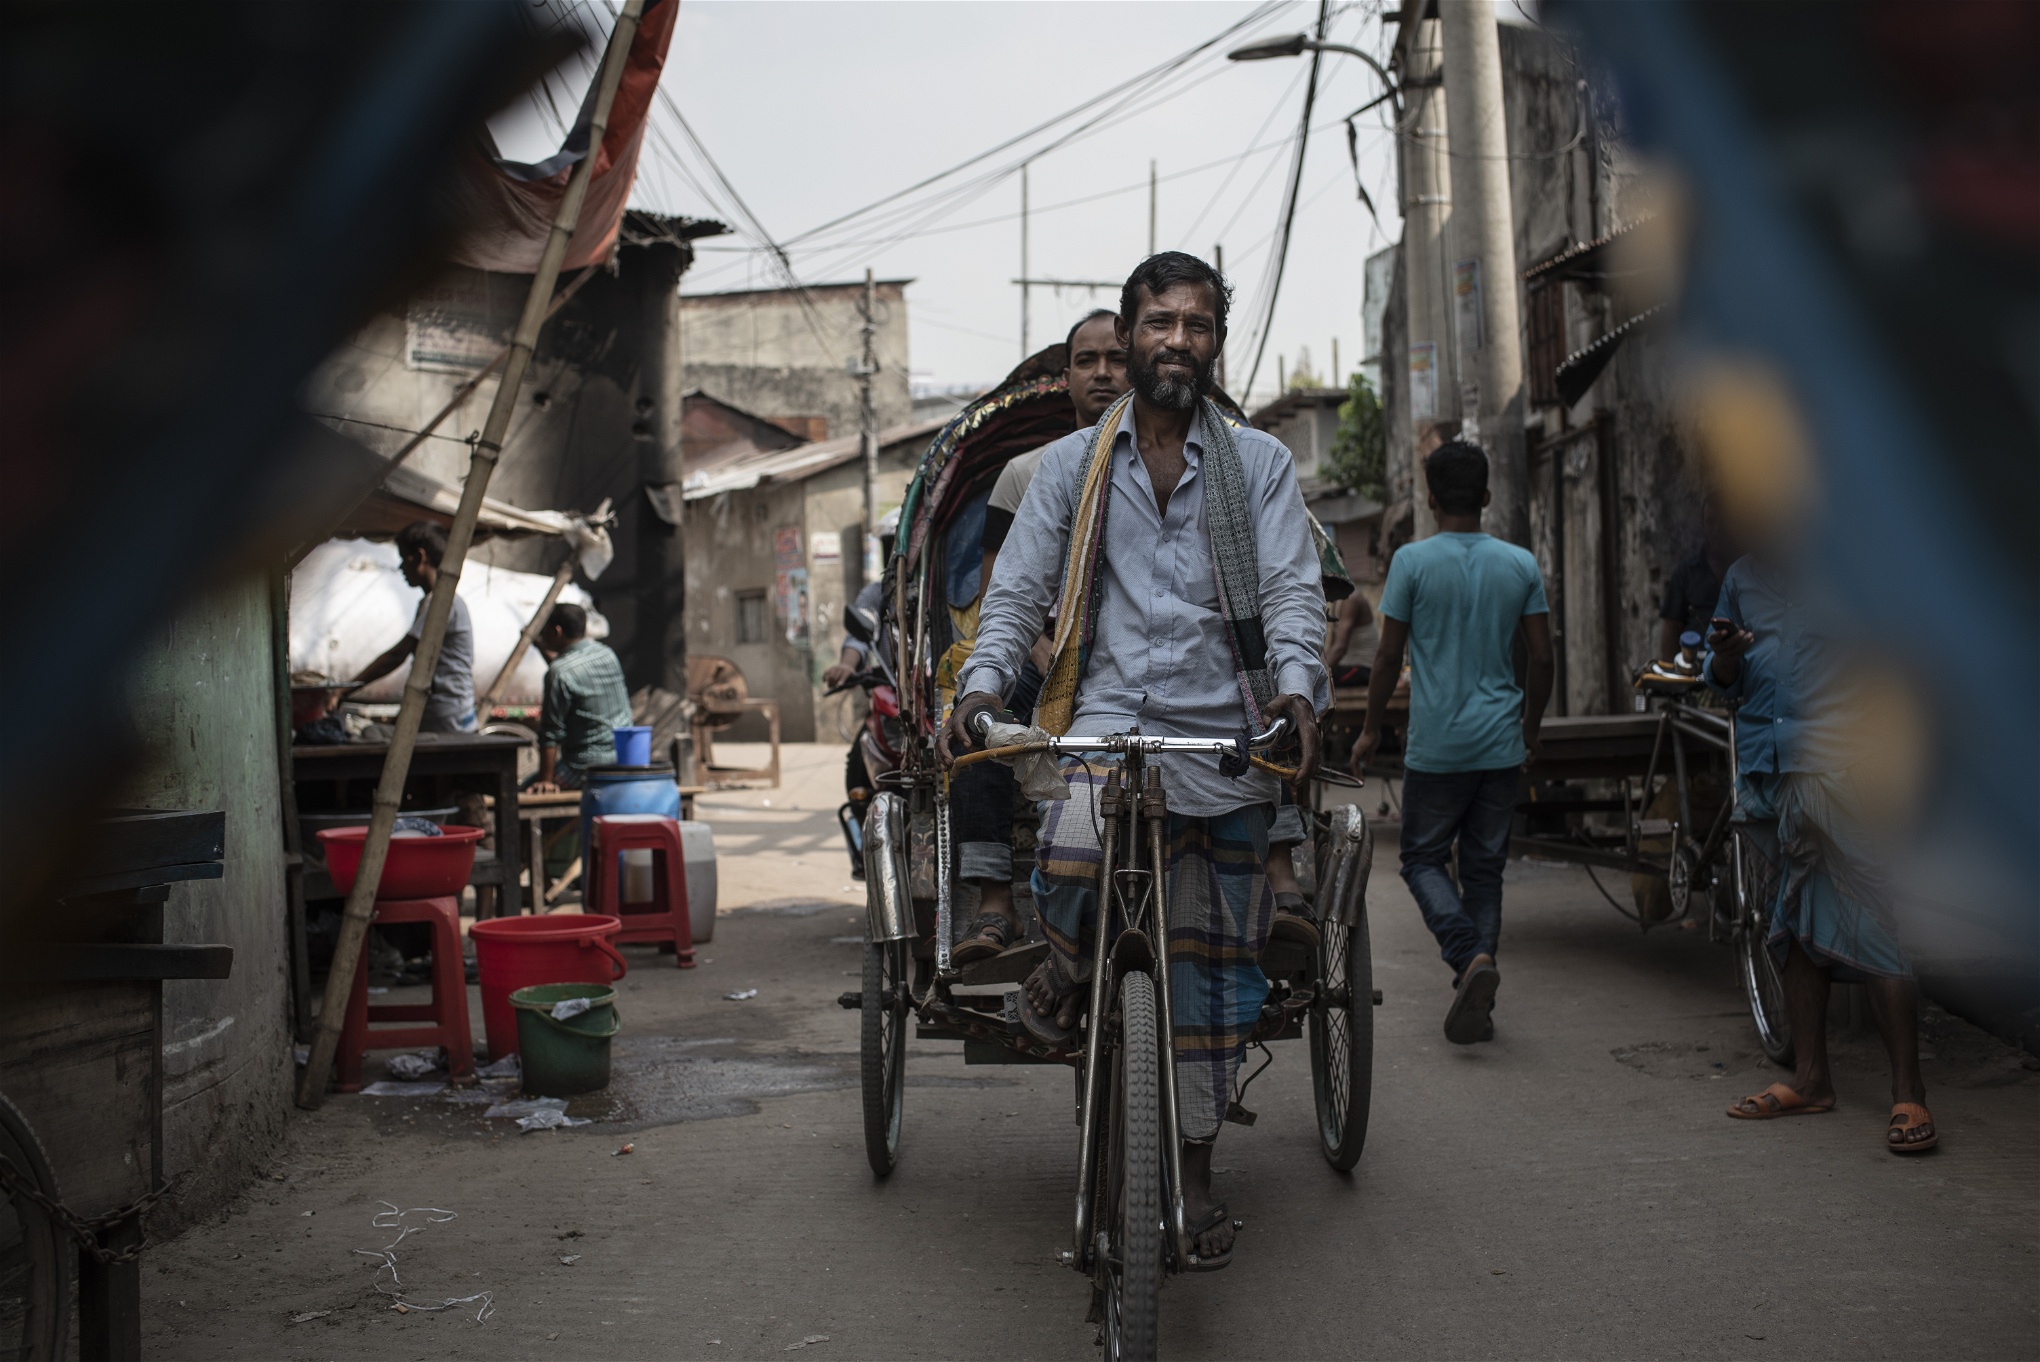 Akkas Ali Sheik har jobbet med att köra cykelriksha i 30 år. Han började som 15 åring när hans far dog och han tvingades försörja familjen.